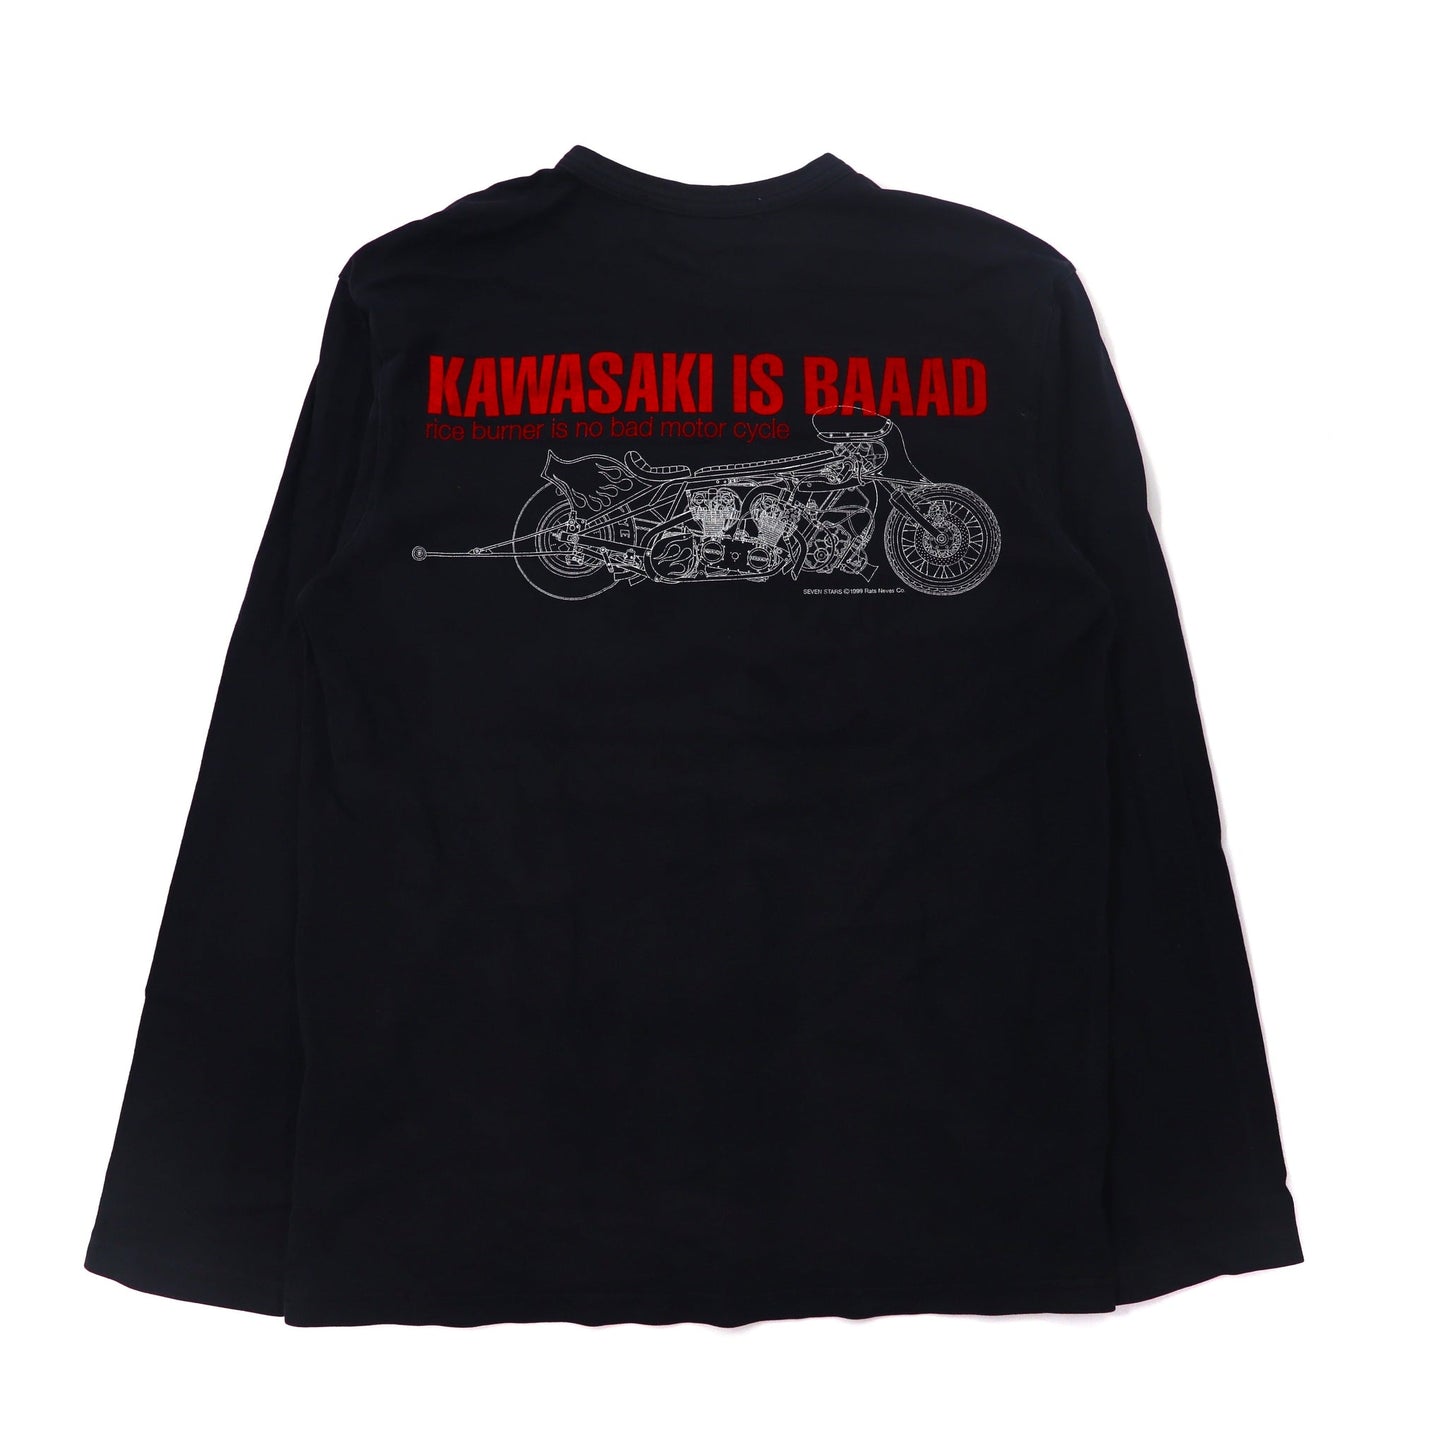 SOTQ ロングスリーブTシャツ L ブラック 川崎 kawasaki is BAAAD MOTORWN限定-SOTQ ( SWIPE ON THE QUIET )-古着